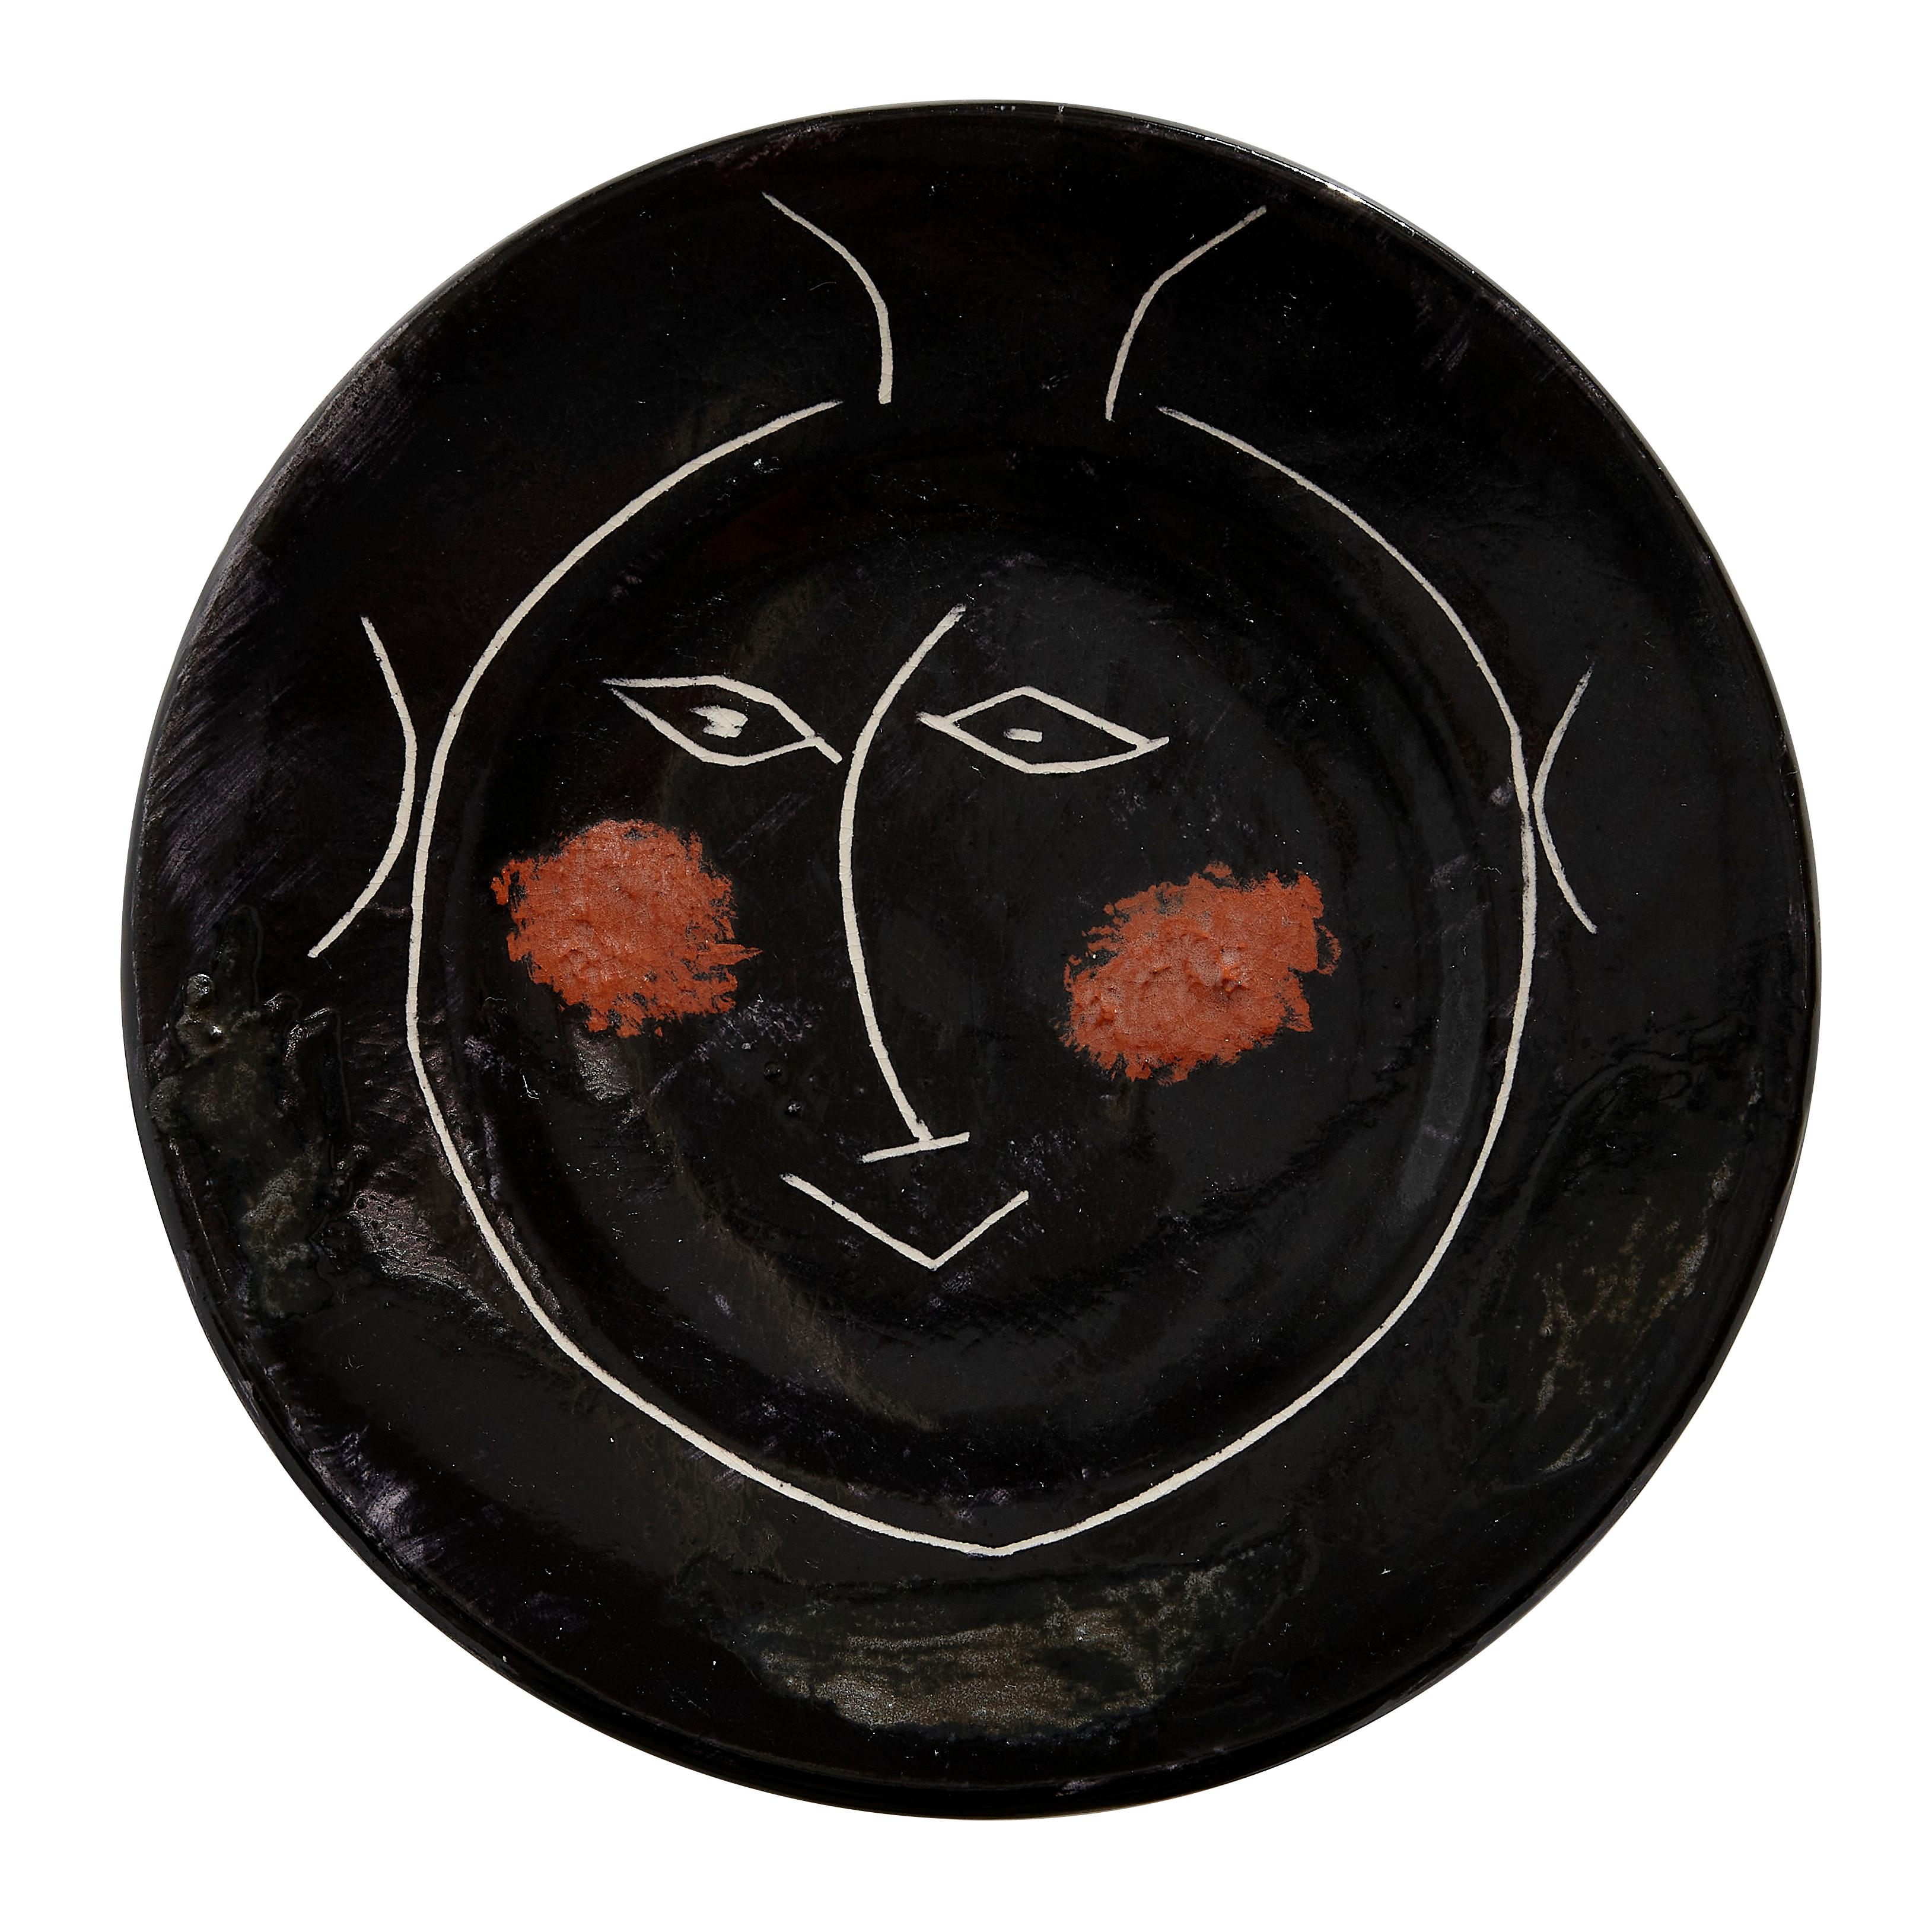 PABLO PICASSO (1881-1973) 
Service visage noir (A. R. 39)

Assiette Terre de faïence, 1948, de l'édition de 100, inscrite 'D', partiellement glacée et peinte, avec les tampons de l'Edition Picasso et de Madoura.